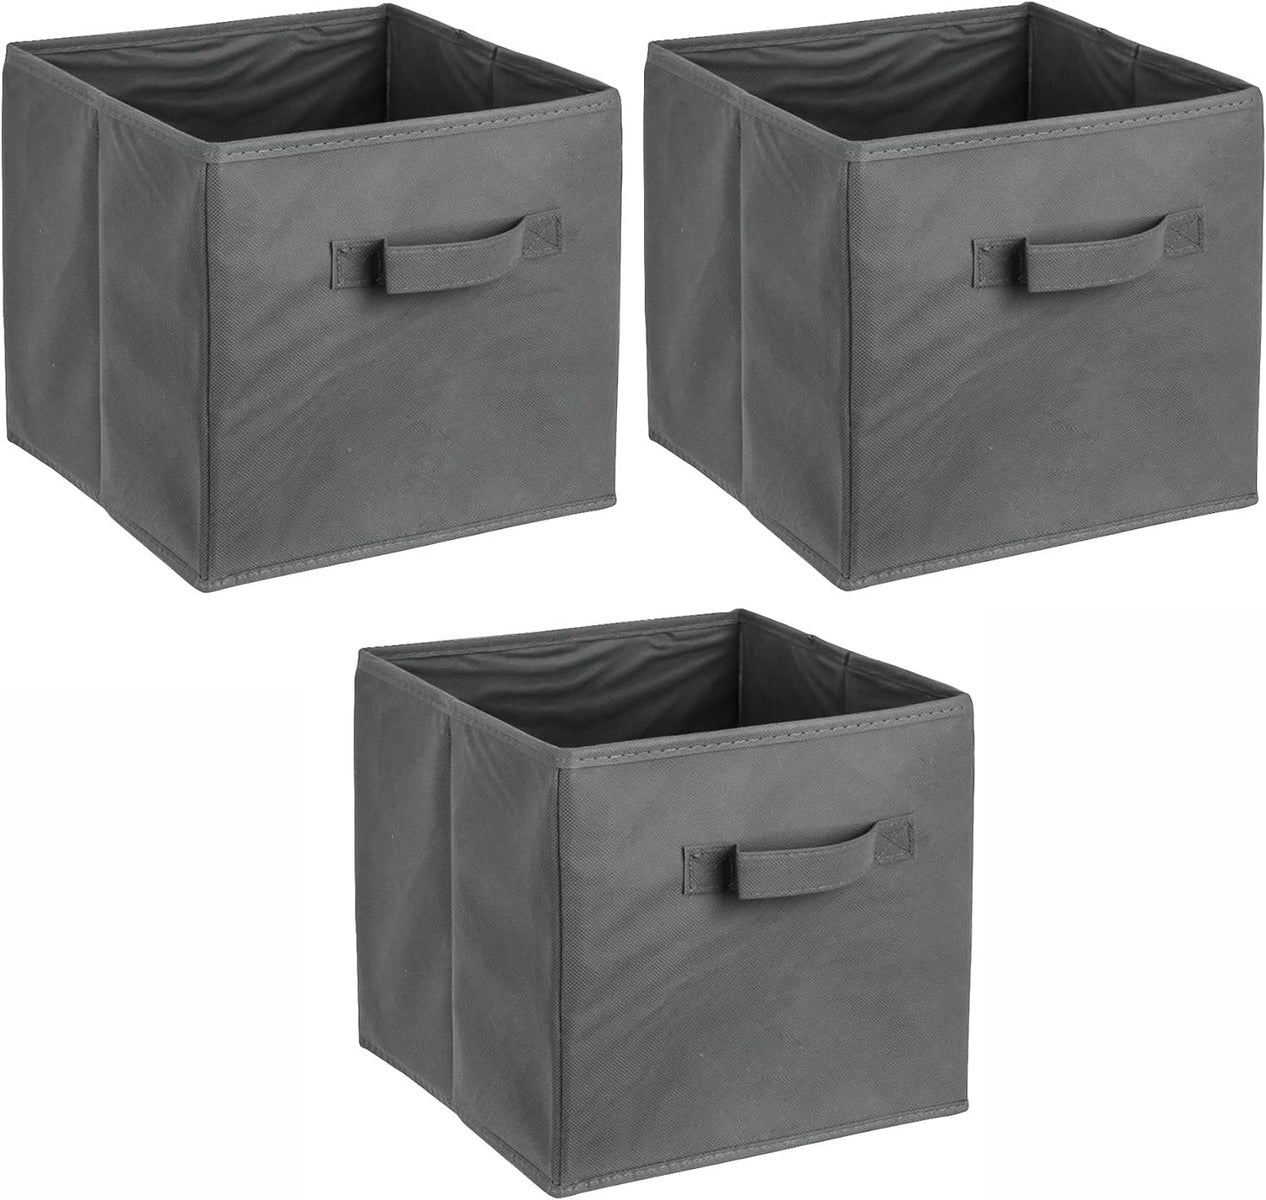 ADOB 3er Set Faltbox, Aufbewahrungsbox, Aufbewahrungskiste in Würfelform mit Griff, Farbe Dunkelgrau